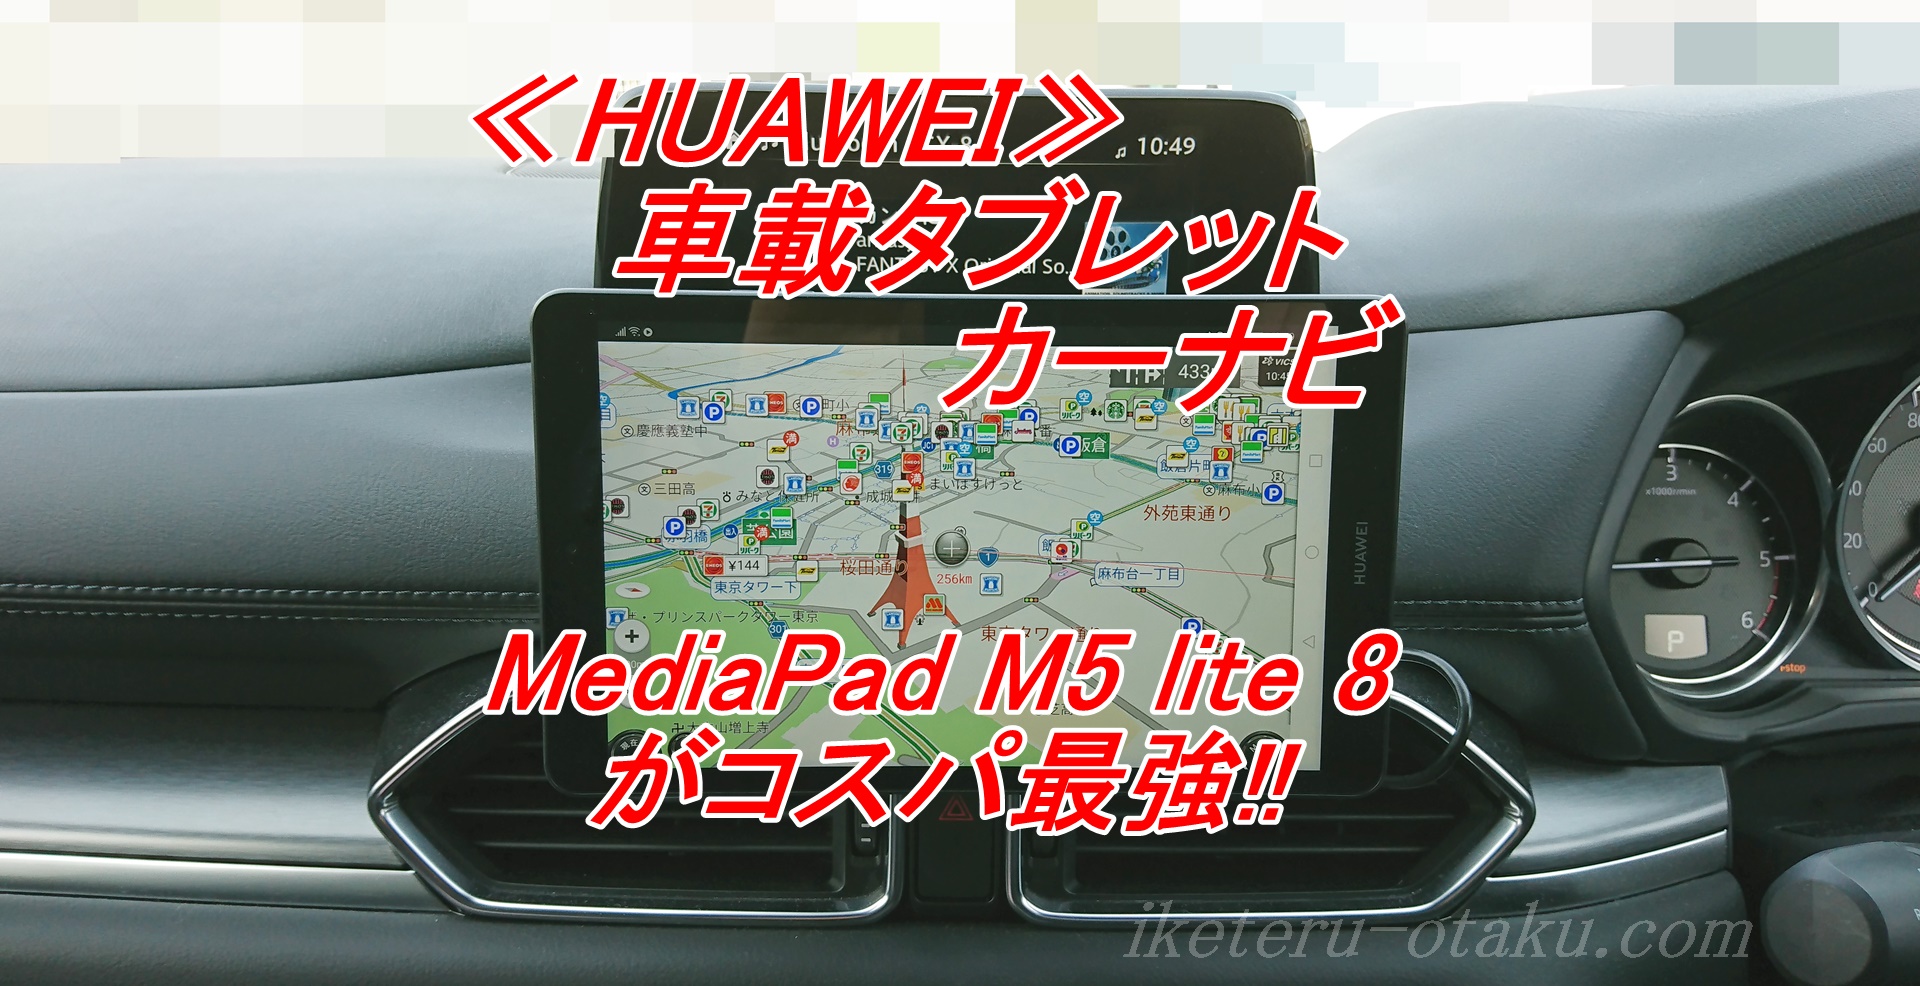 車載タブレットカーナビはiPad miniではなくHUAWEI MediaPad M5 lite 8がコスパ最強!!